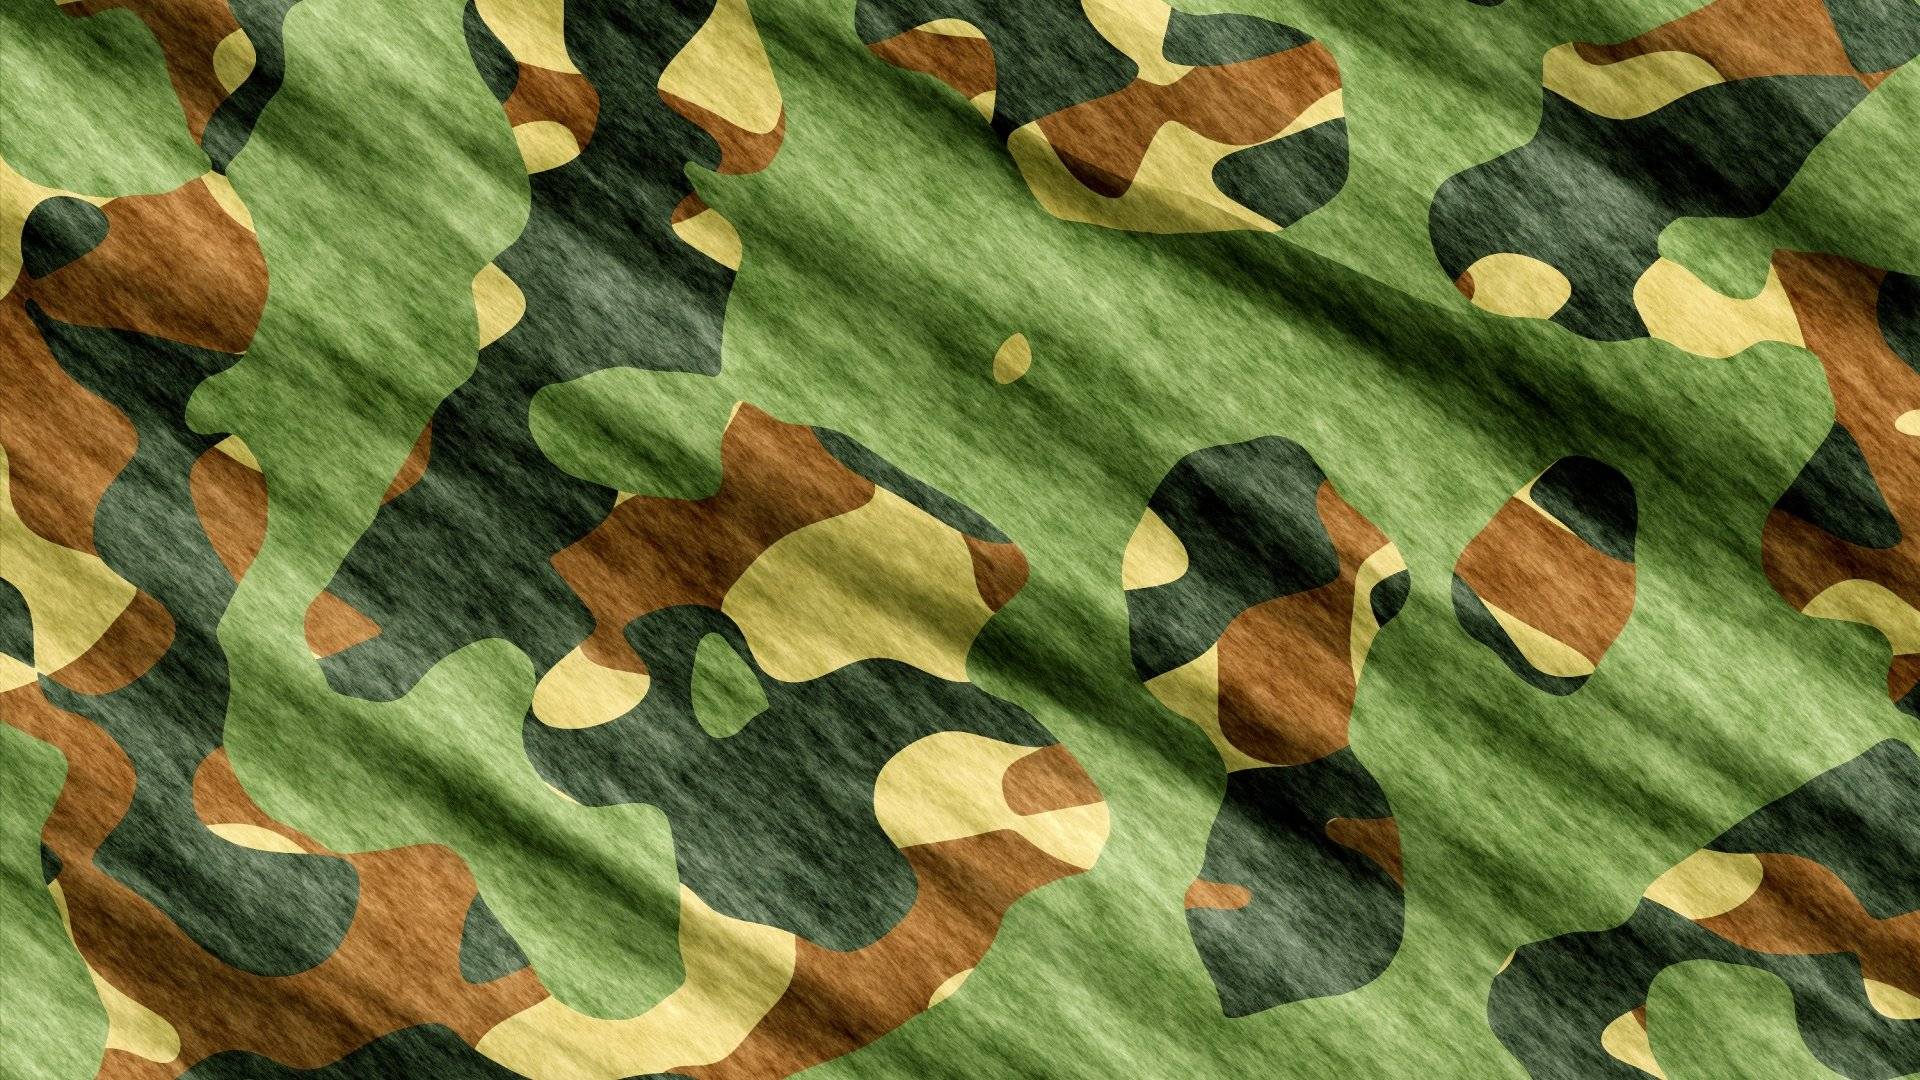 Сравнение основных тканей для пошива военной одежды и формы